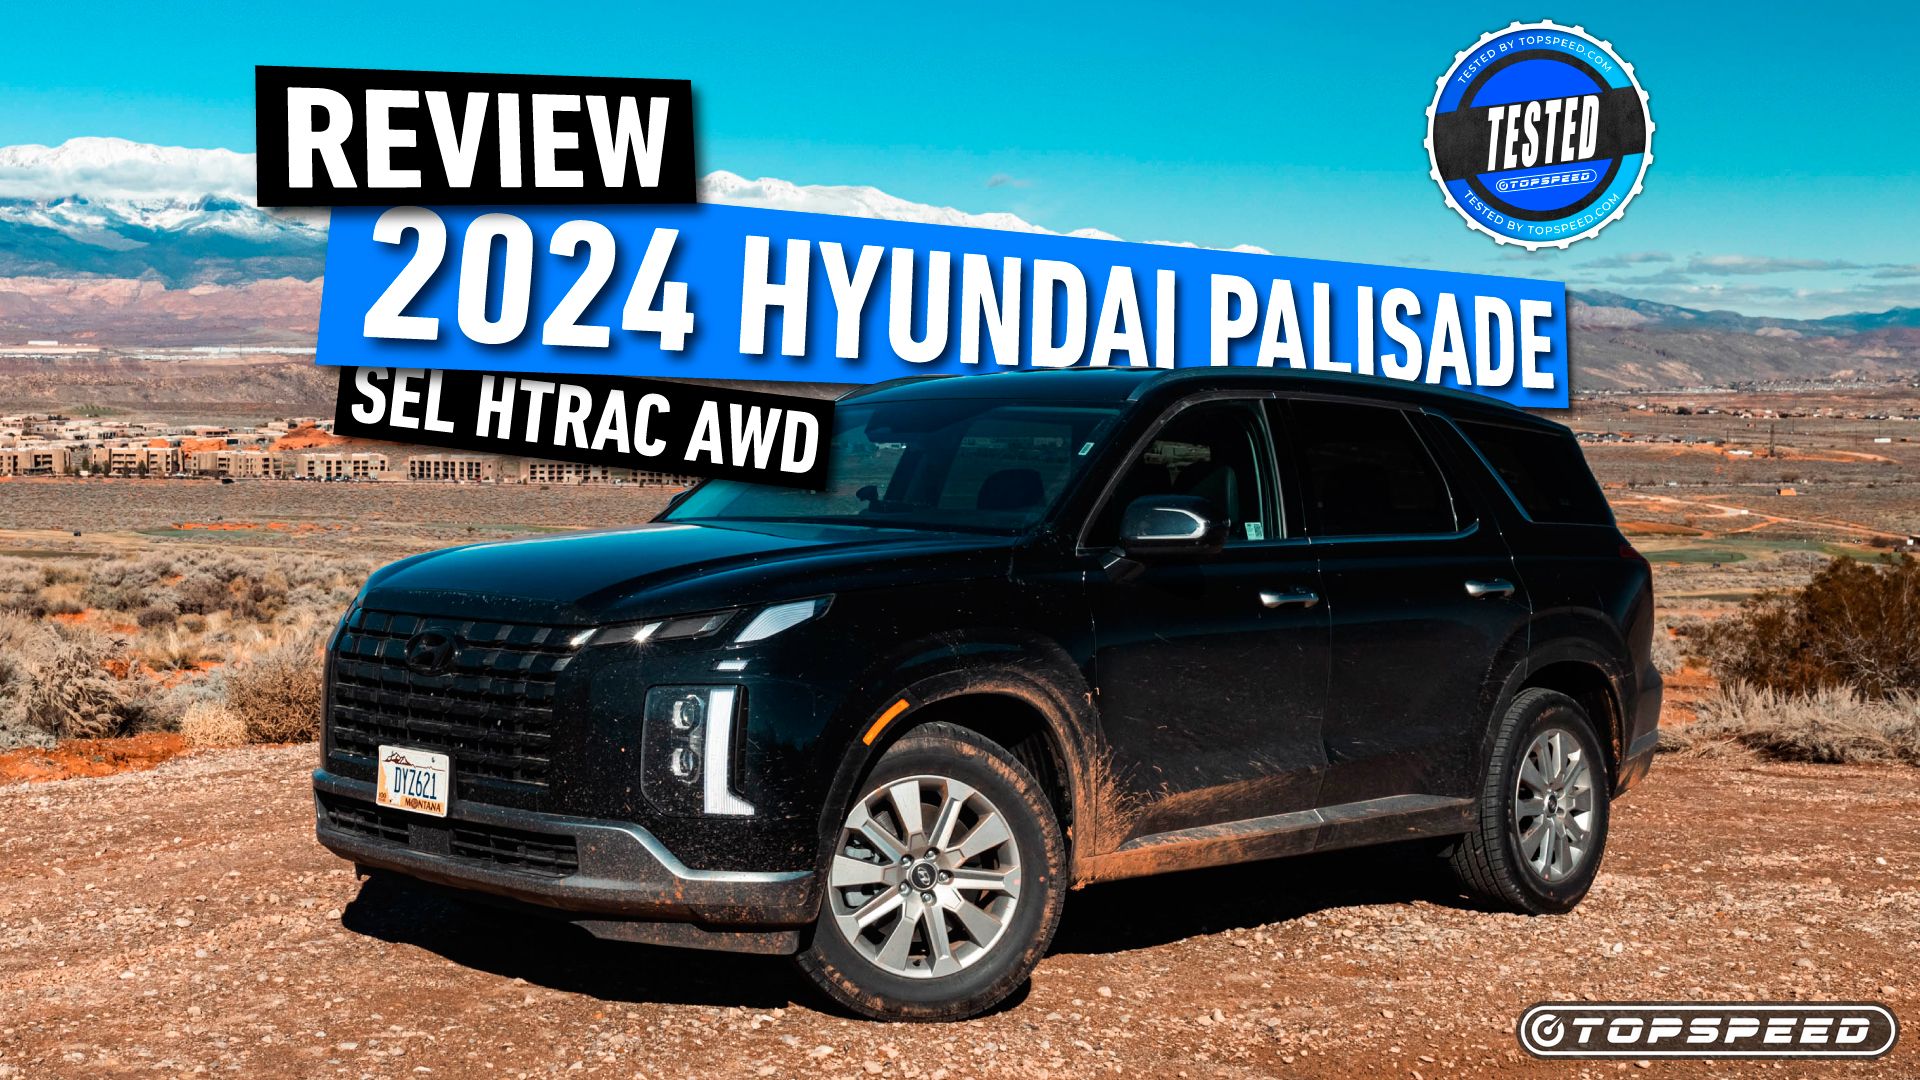 2024-Hyundai-Palisade-Review-1